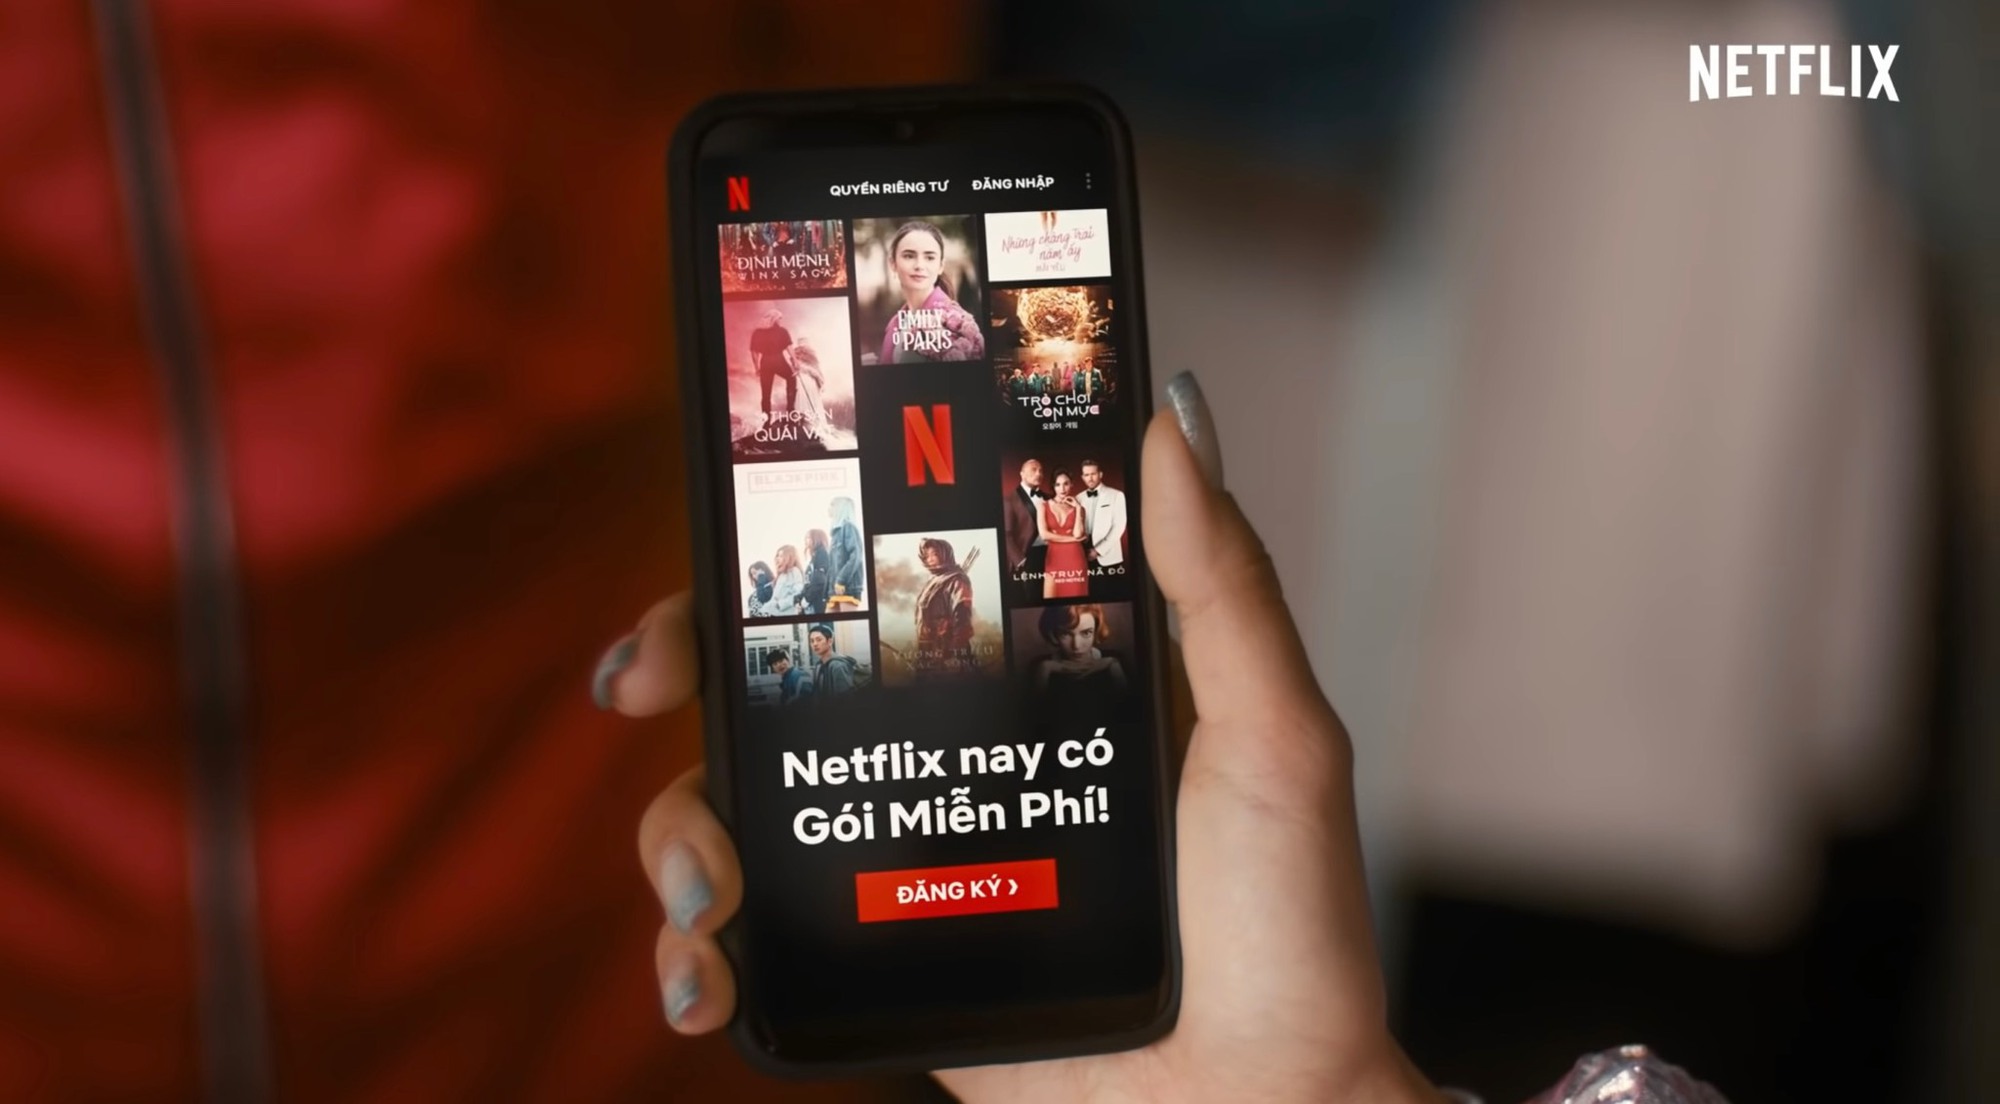 Netflix chuẩn bị cắt dịch vụ miễn phí ở Việt Nam, người dùng chắc chắn phải bỏ tiền mới được xem phim - Ảnh 1.